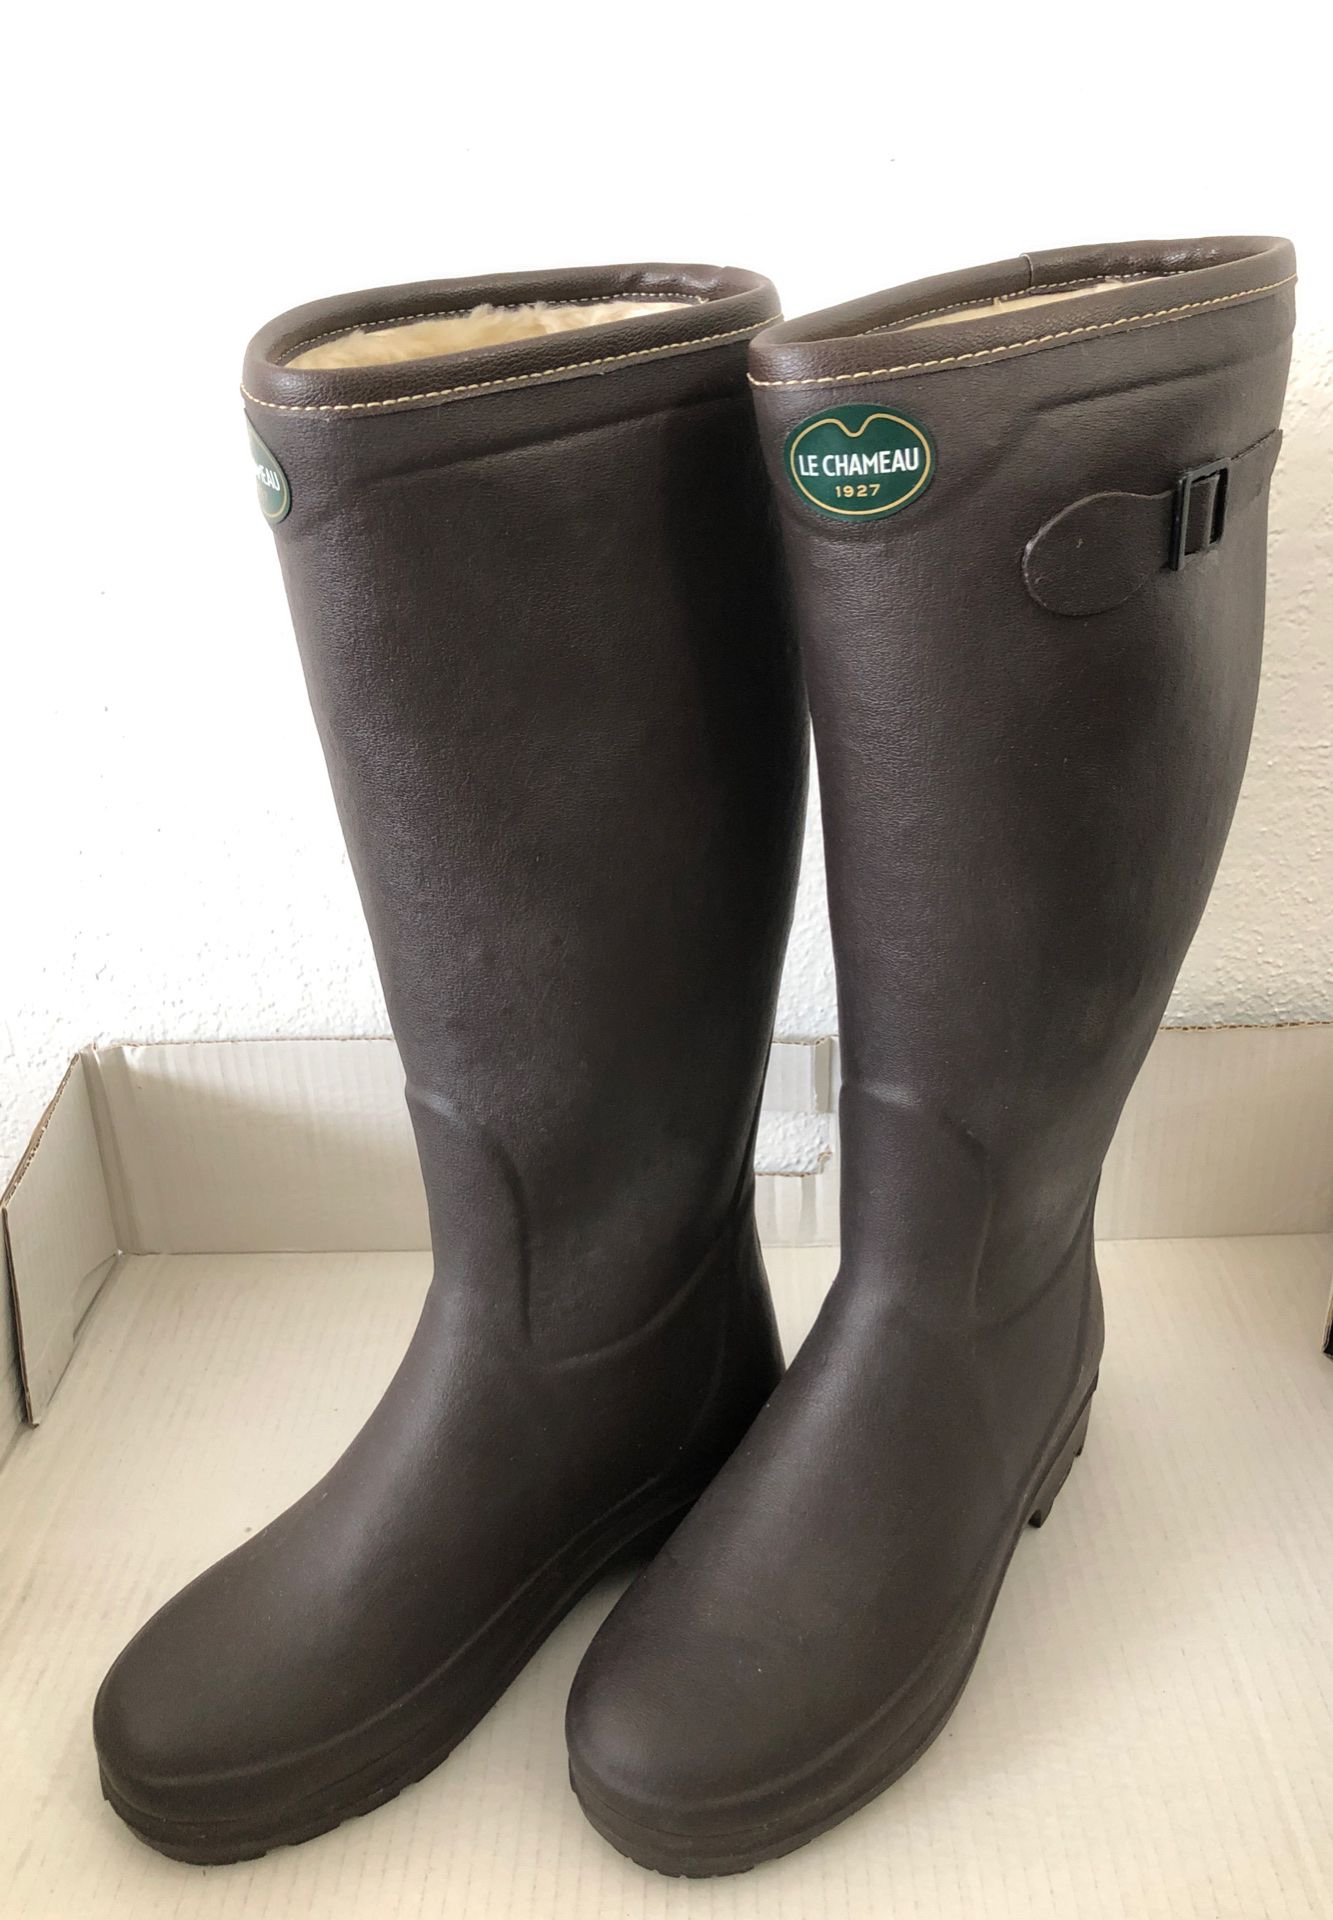 LE CHAMEAU Iris Faux Fur Rain Boots Women Size 39